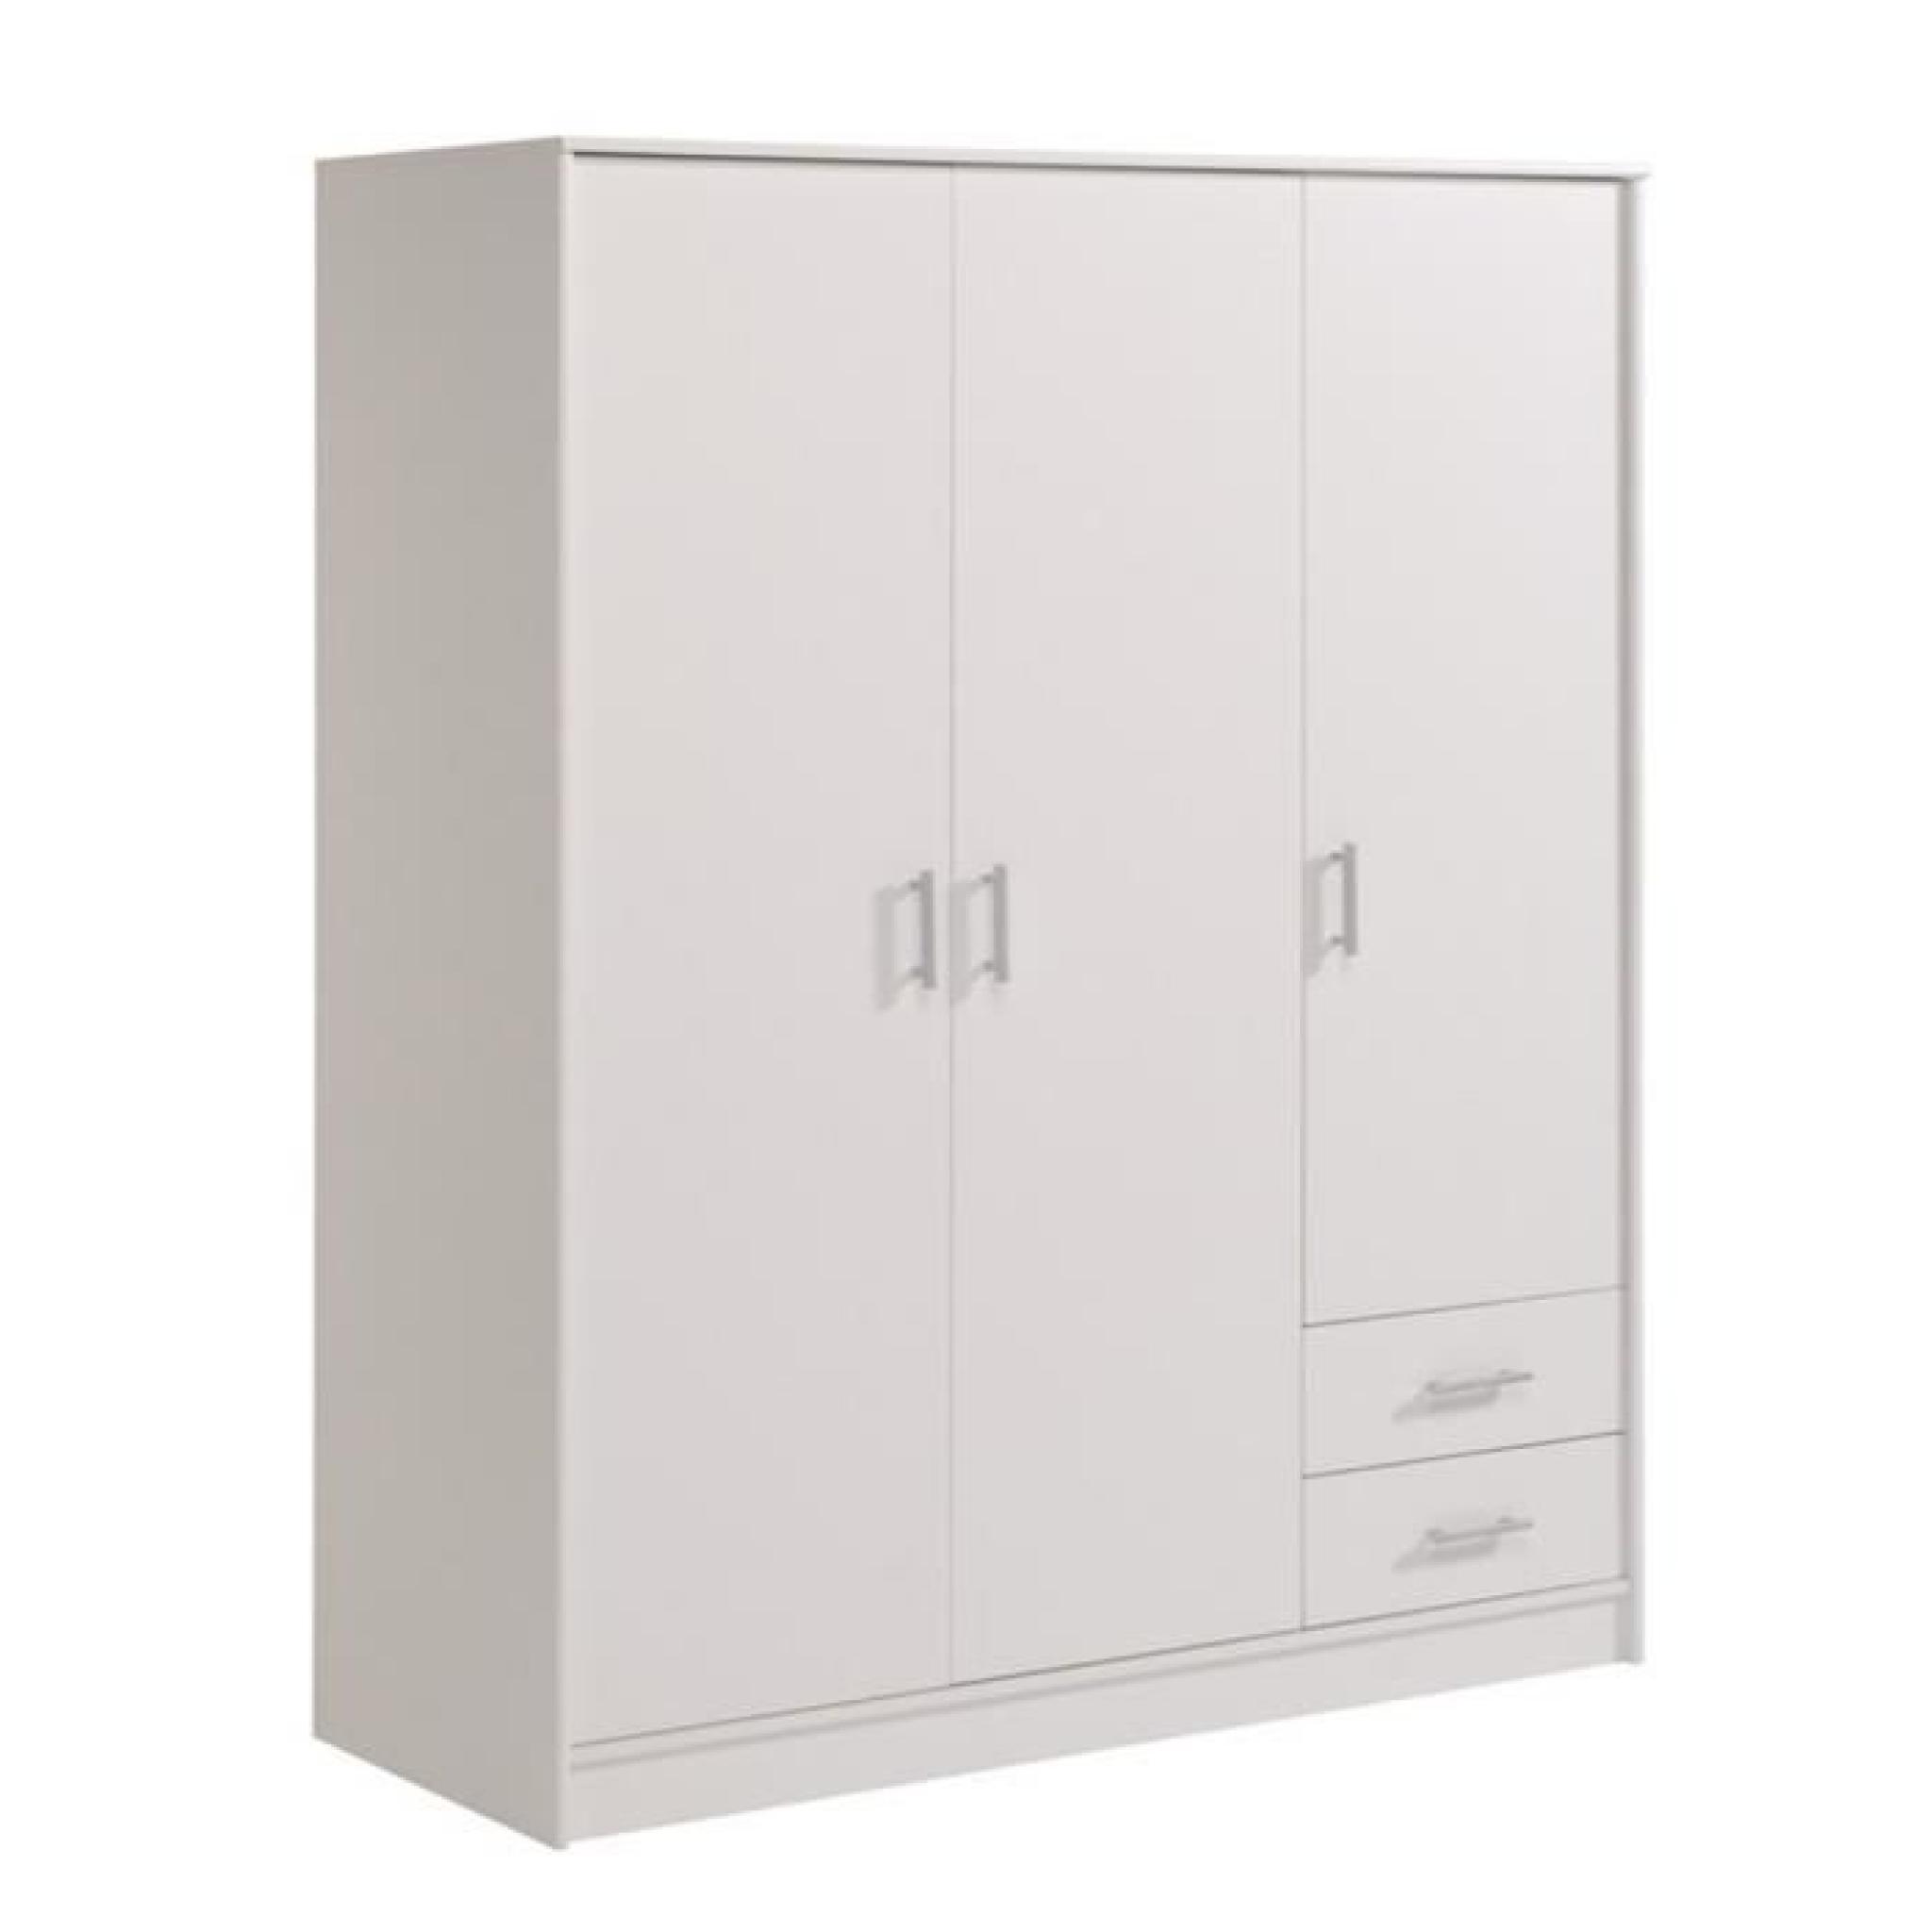 Armoire avec 3 portes et 2 tiroirs coloris Blanc megève, H 180 x L 133 x P 50 cm